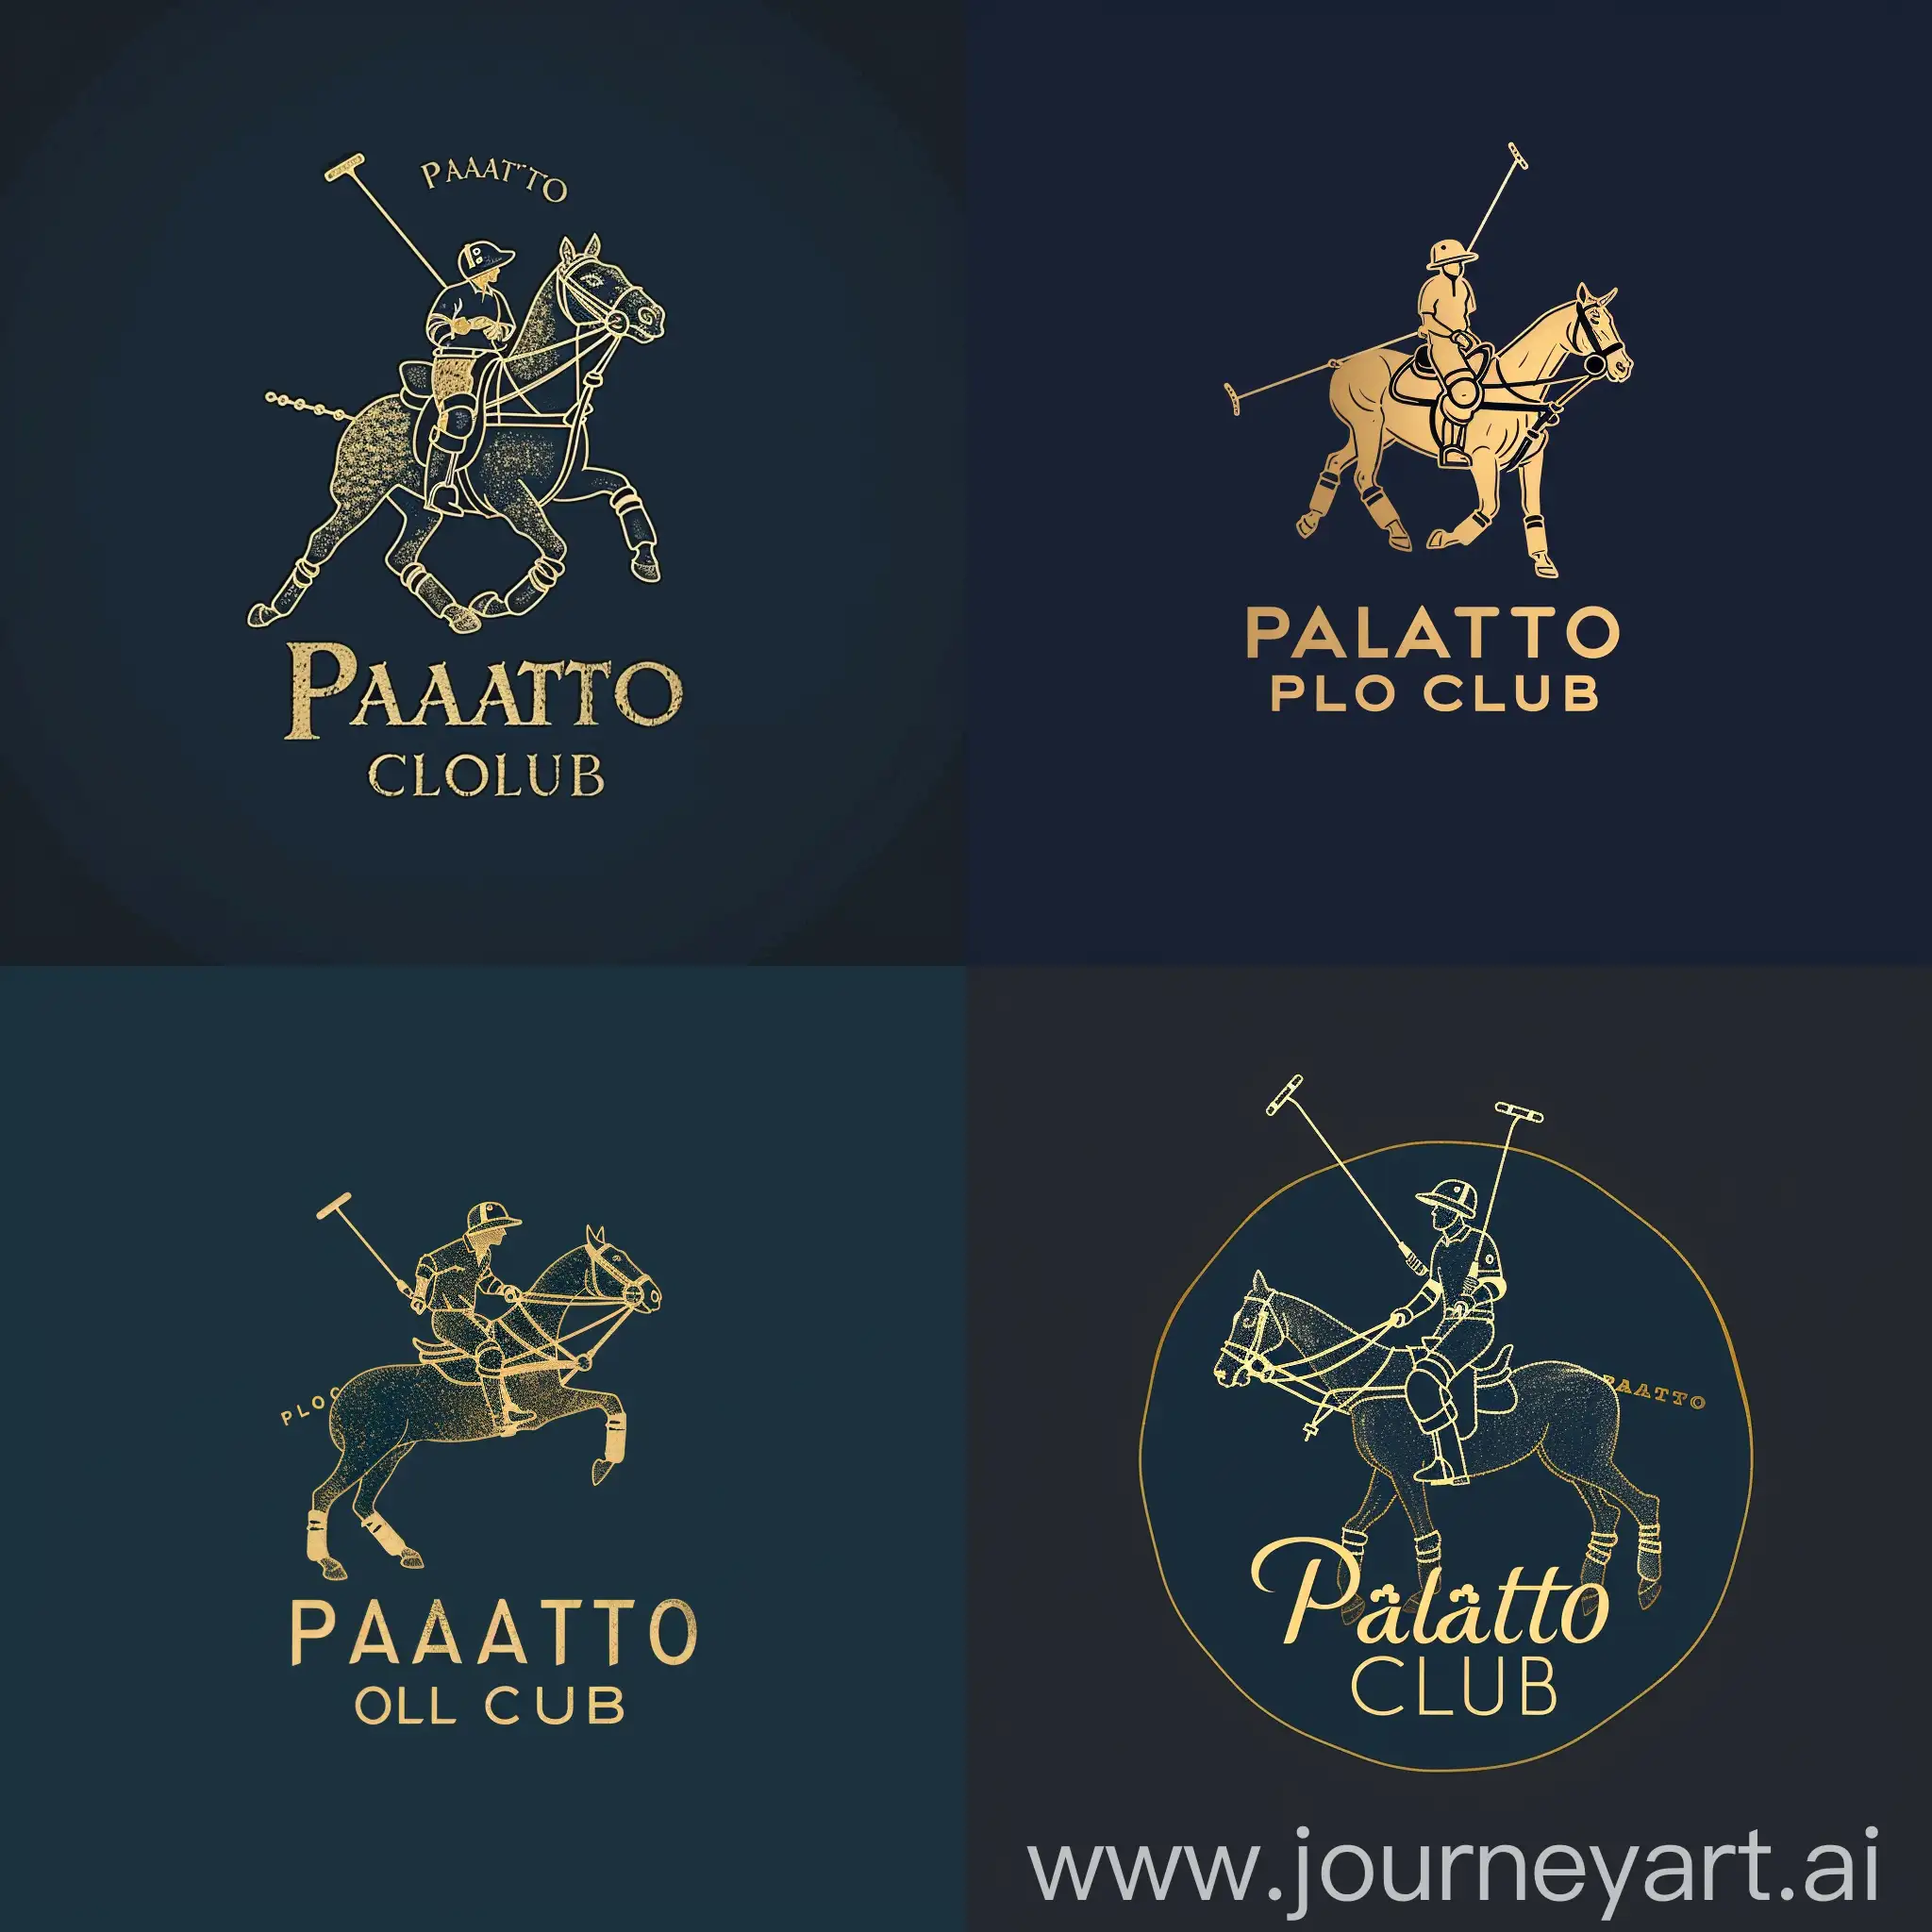 Quiero un logo minimalista, elegante. Para un club de polo, me gustaría más de un elemento relacionado al Polo y todo en color azul marino y dorado. El nombre del club es ¨Palatto Polo Club¨